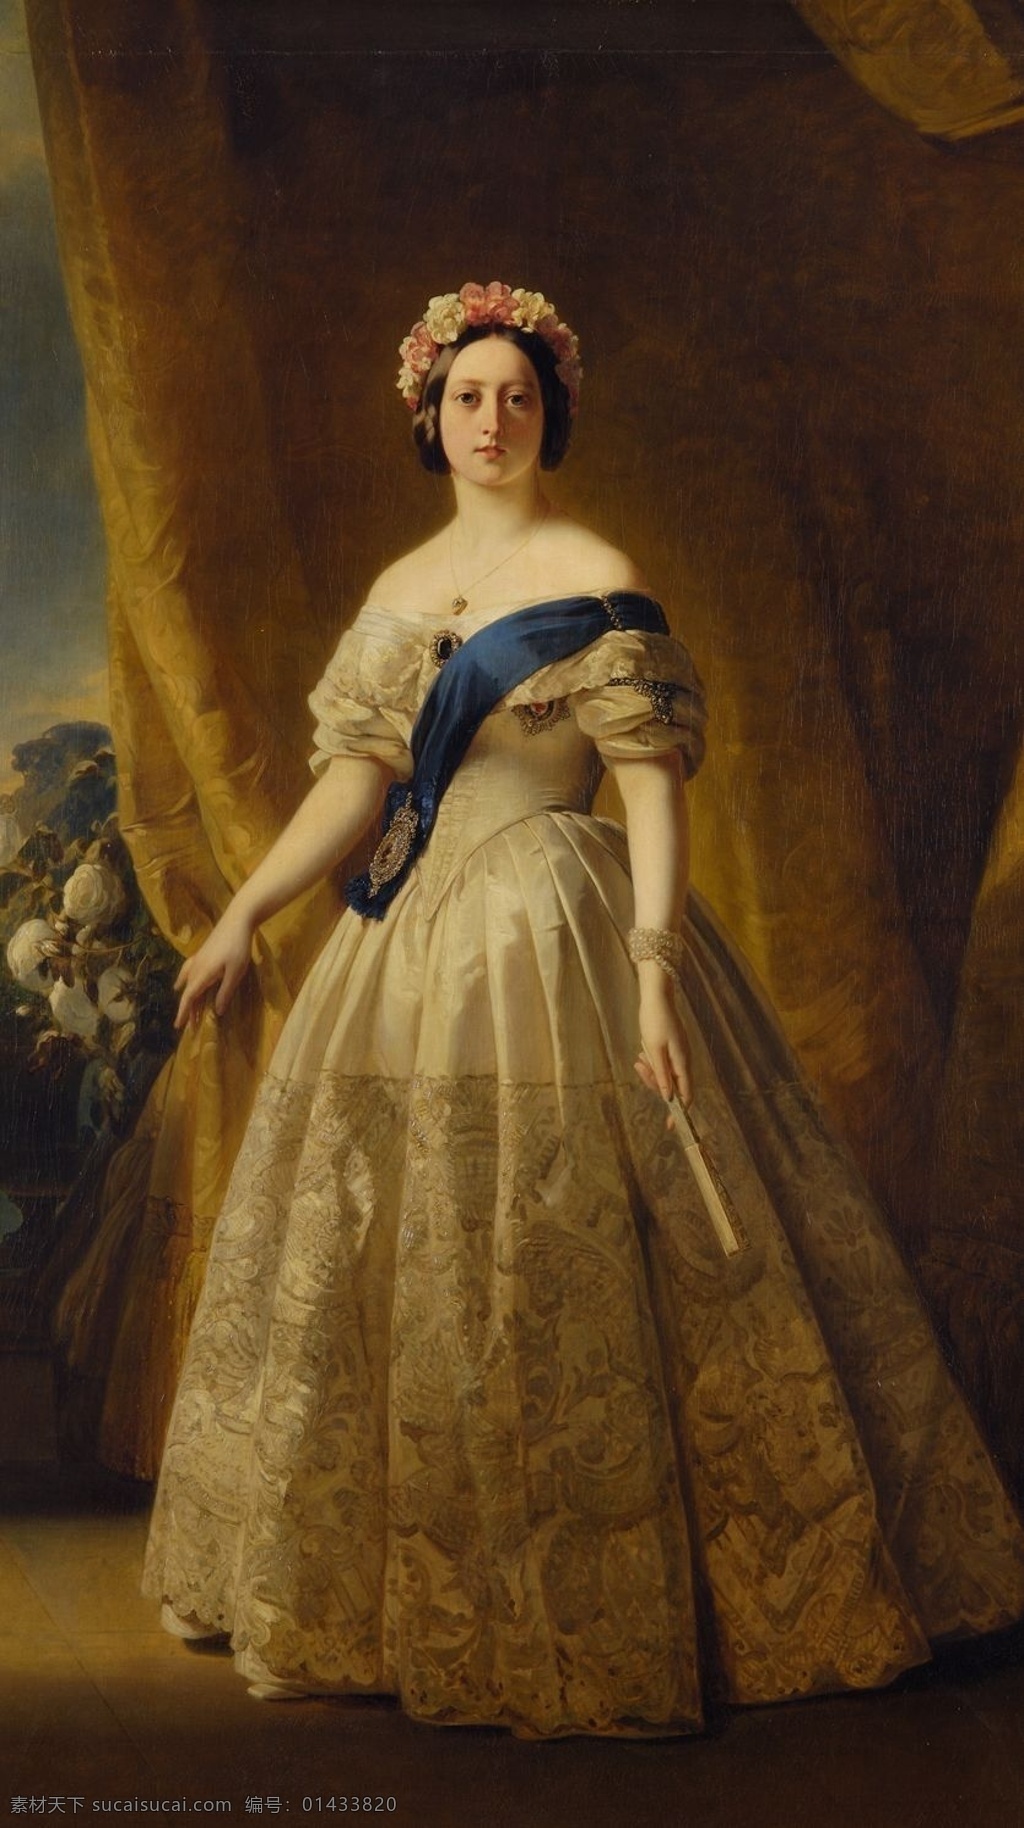 英国 女王 维多利亚 大英帝国 最后 辉煌 时期 油画 绘画书法 文化艺术